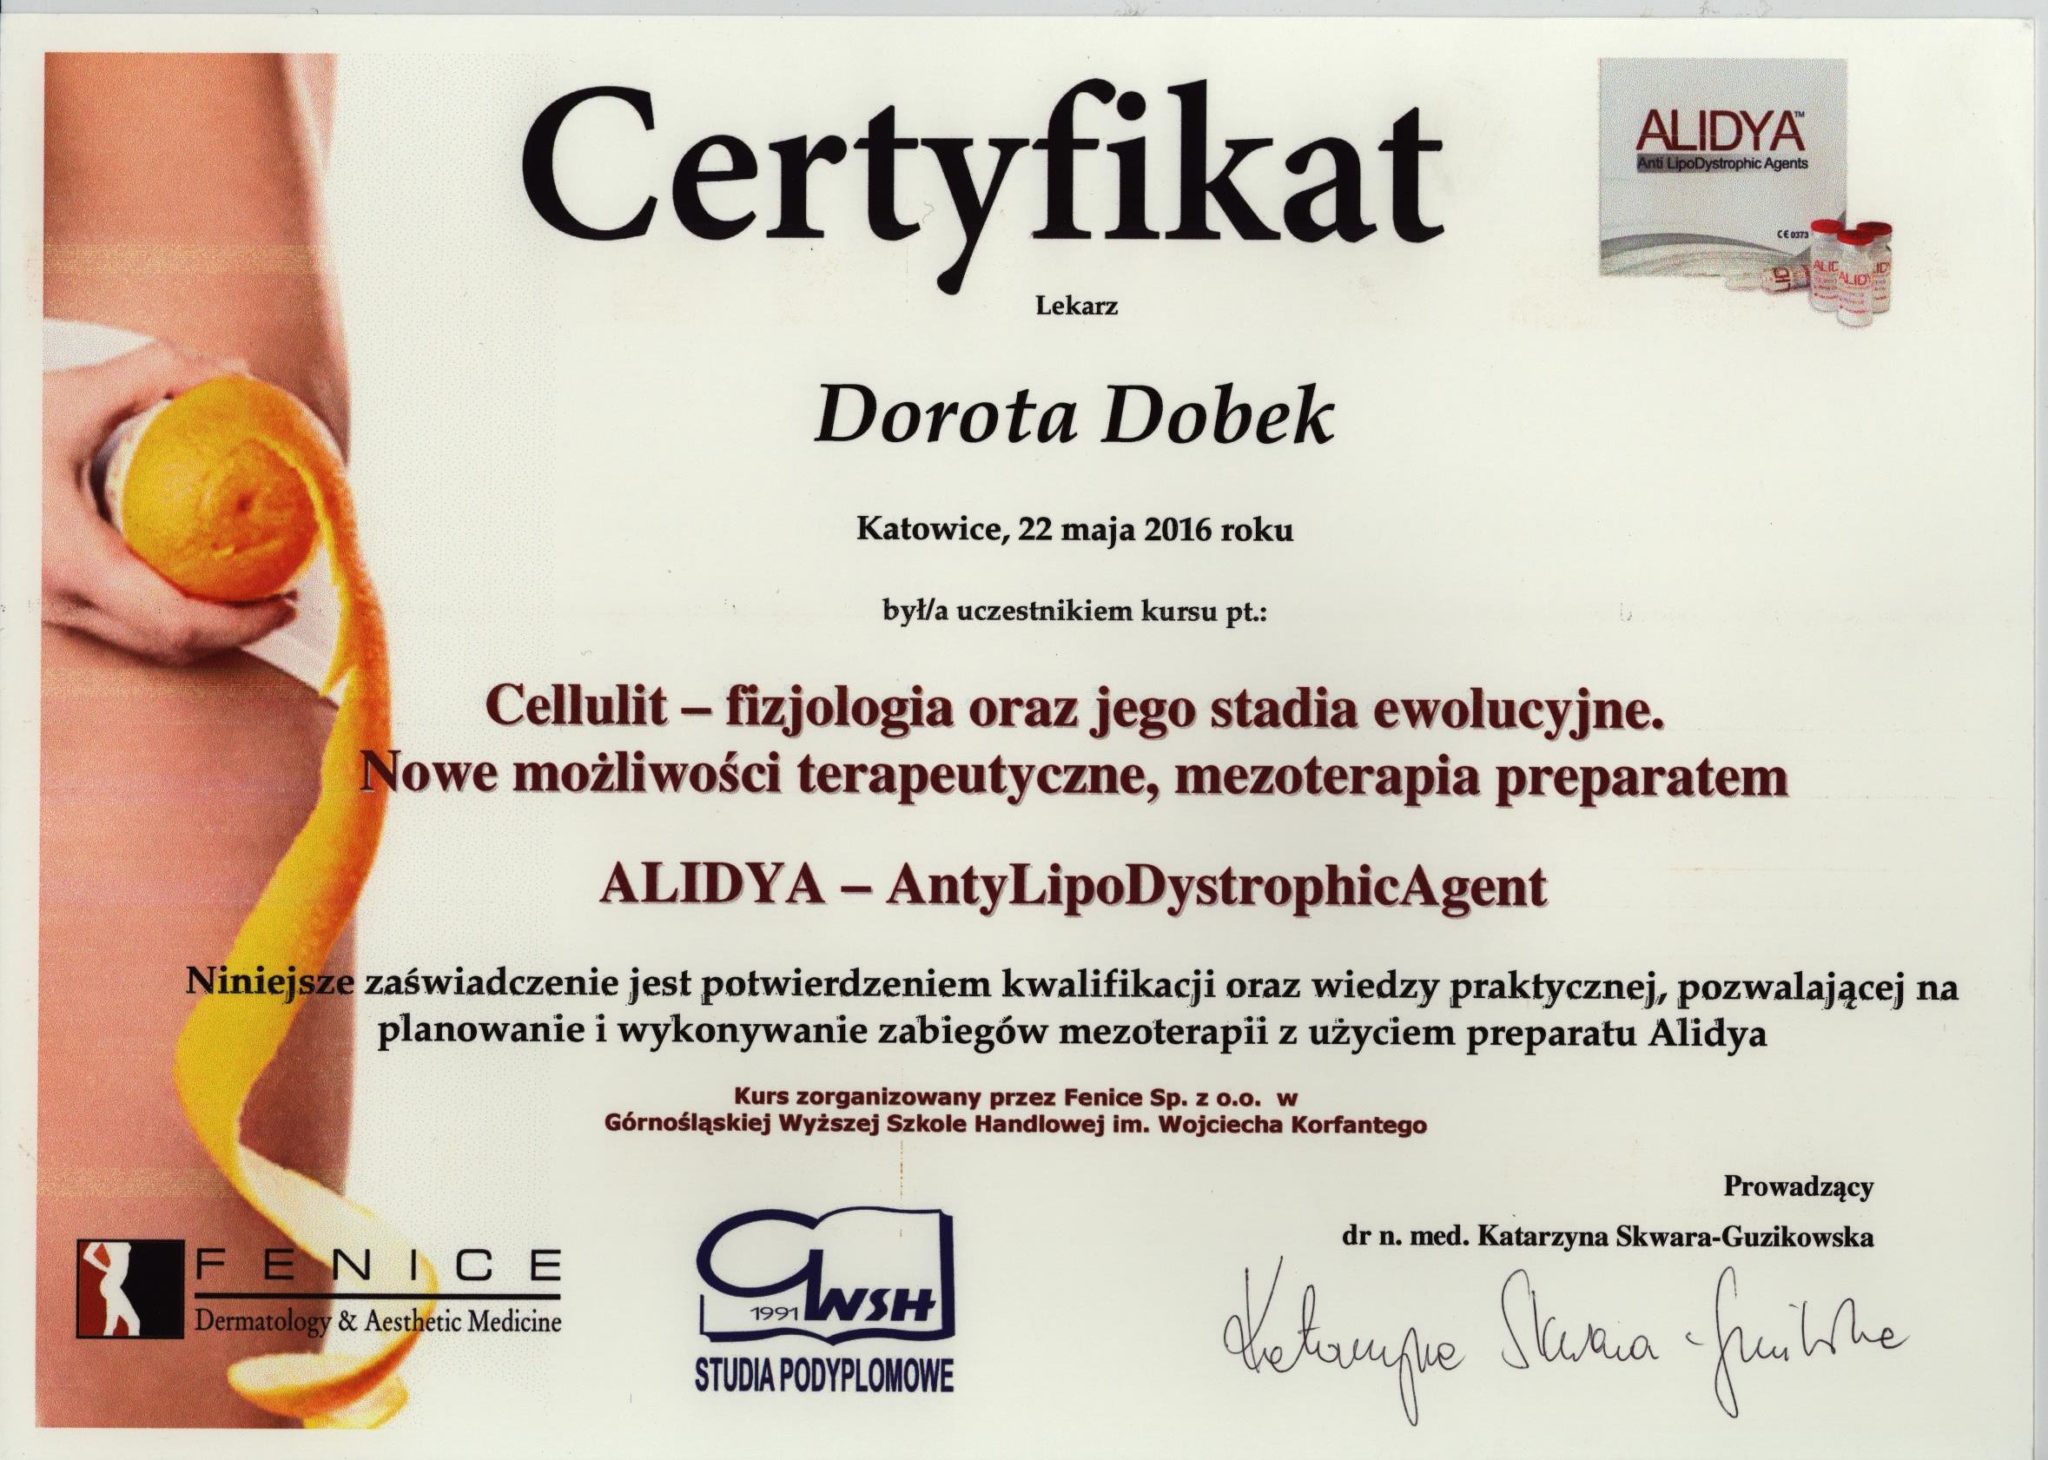 callulit, medycyna estetyczna, certyfikat - Dorota Dobek